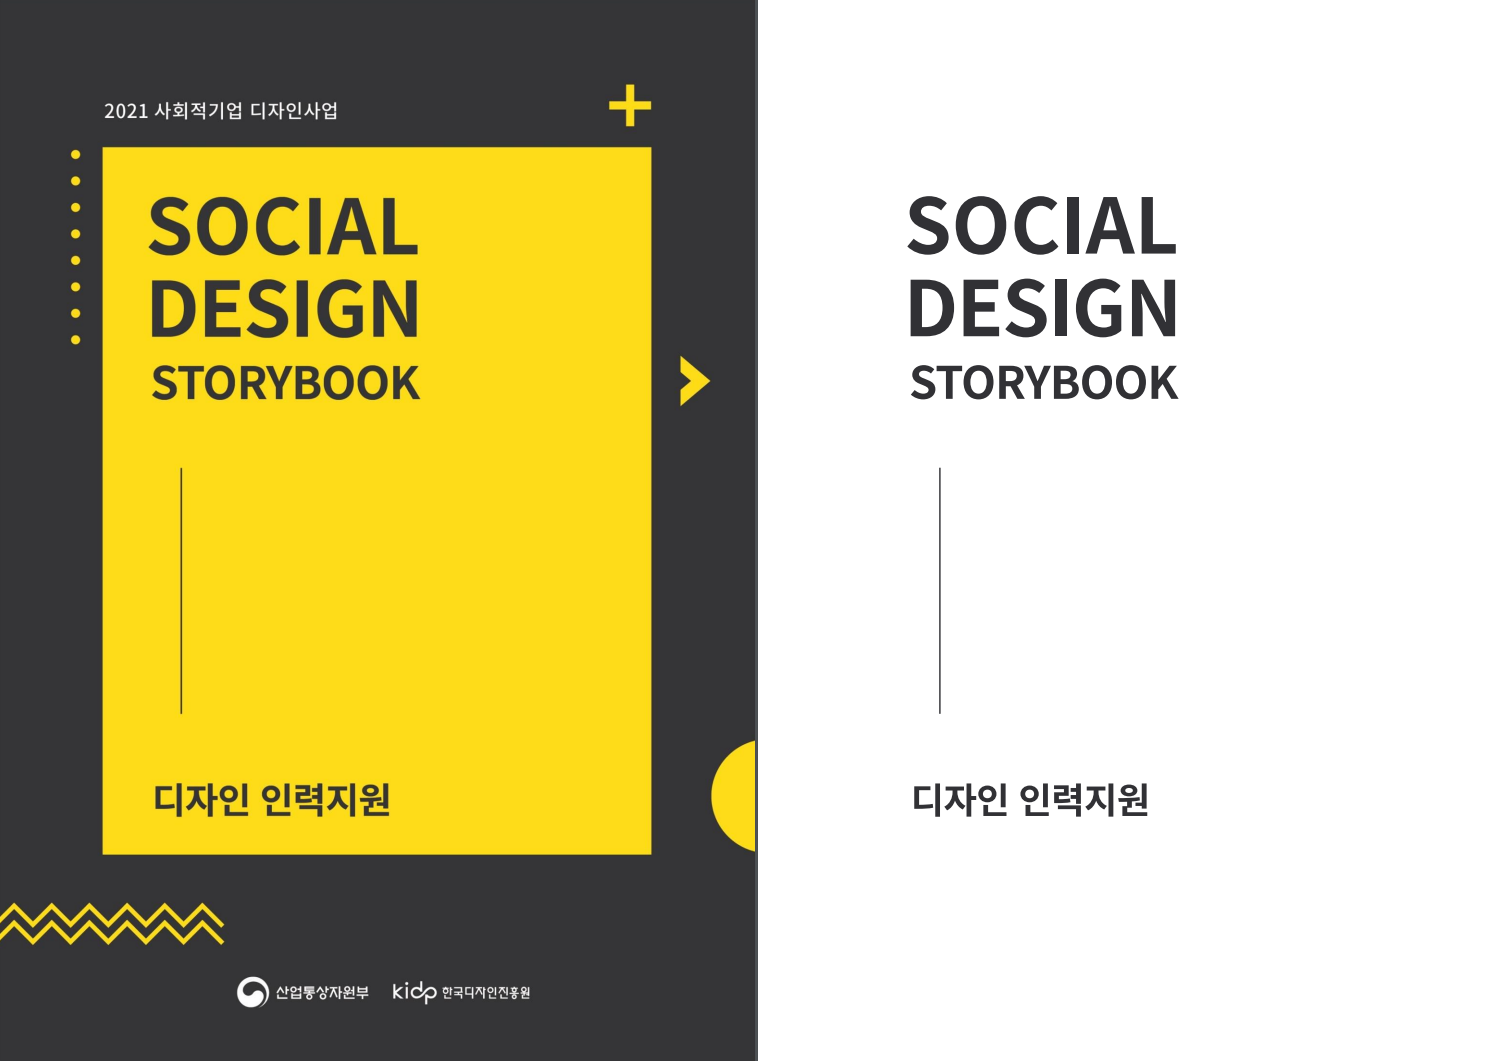 2021 사회적기업 디자인사업_디자인 인력지원 - 한국디자인진흥원, 2021